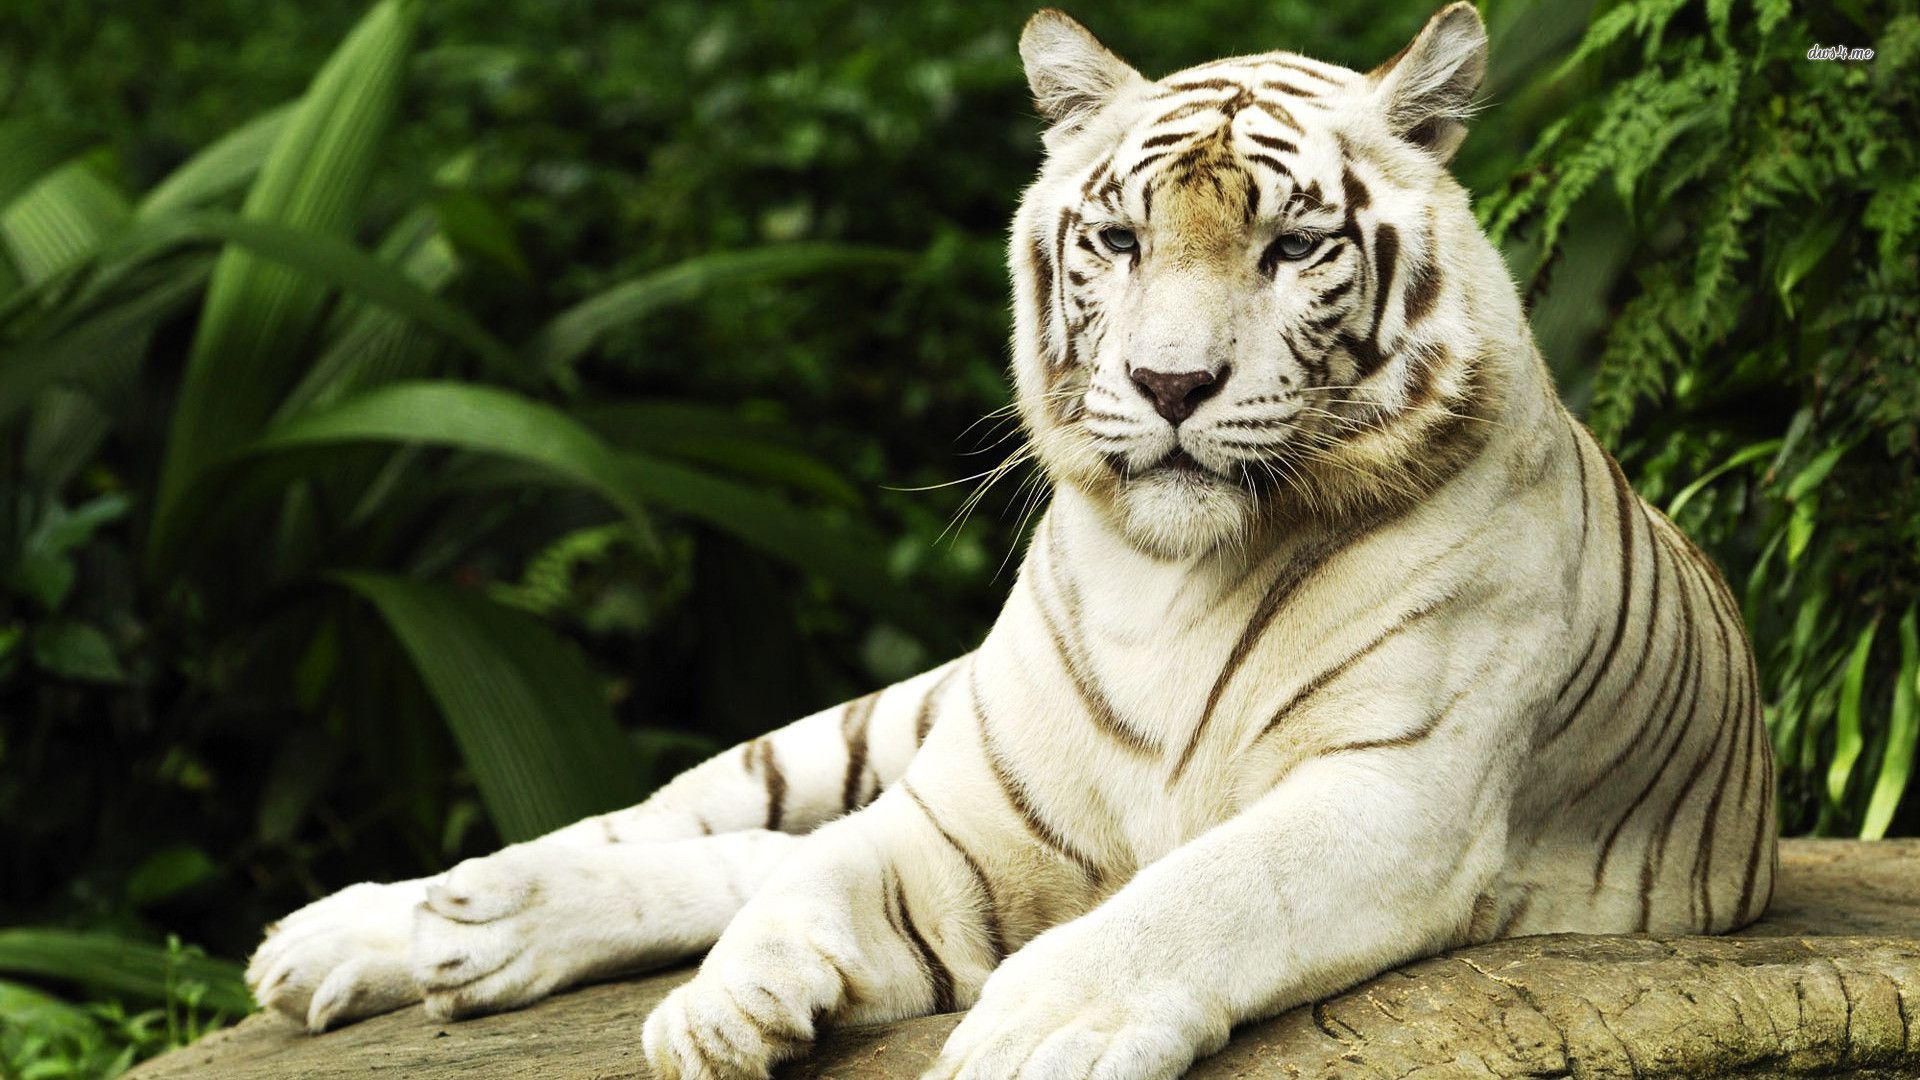 white tiger hd wallpapers 1080p,tiger,mammal,vertebrate,wildlife,bengal tiger